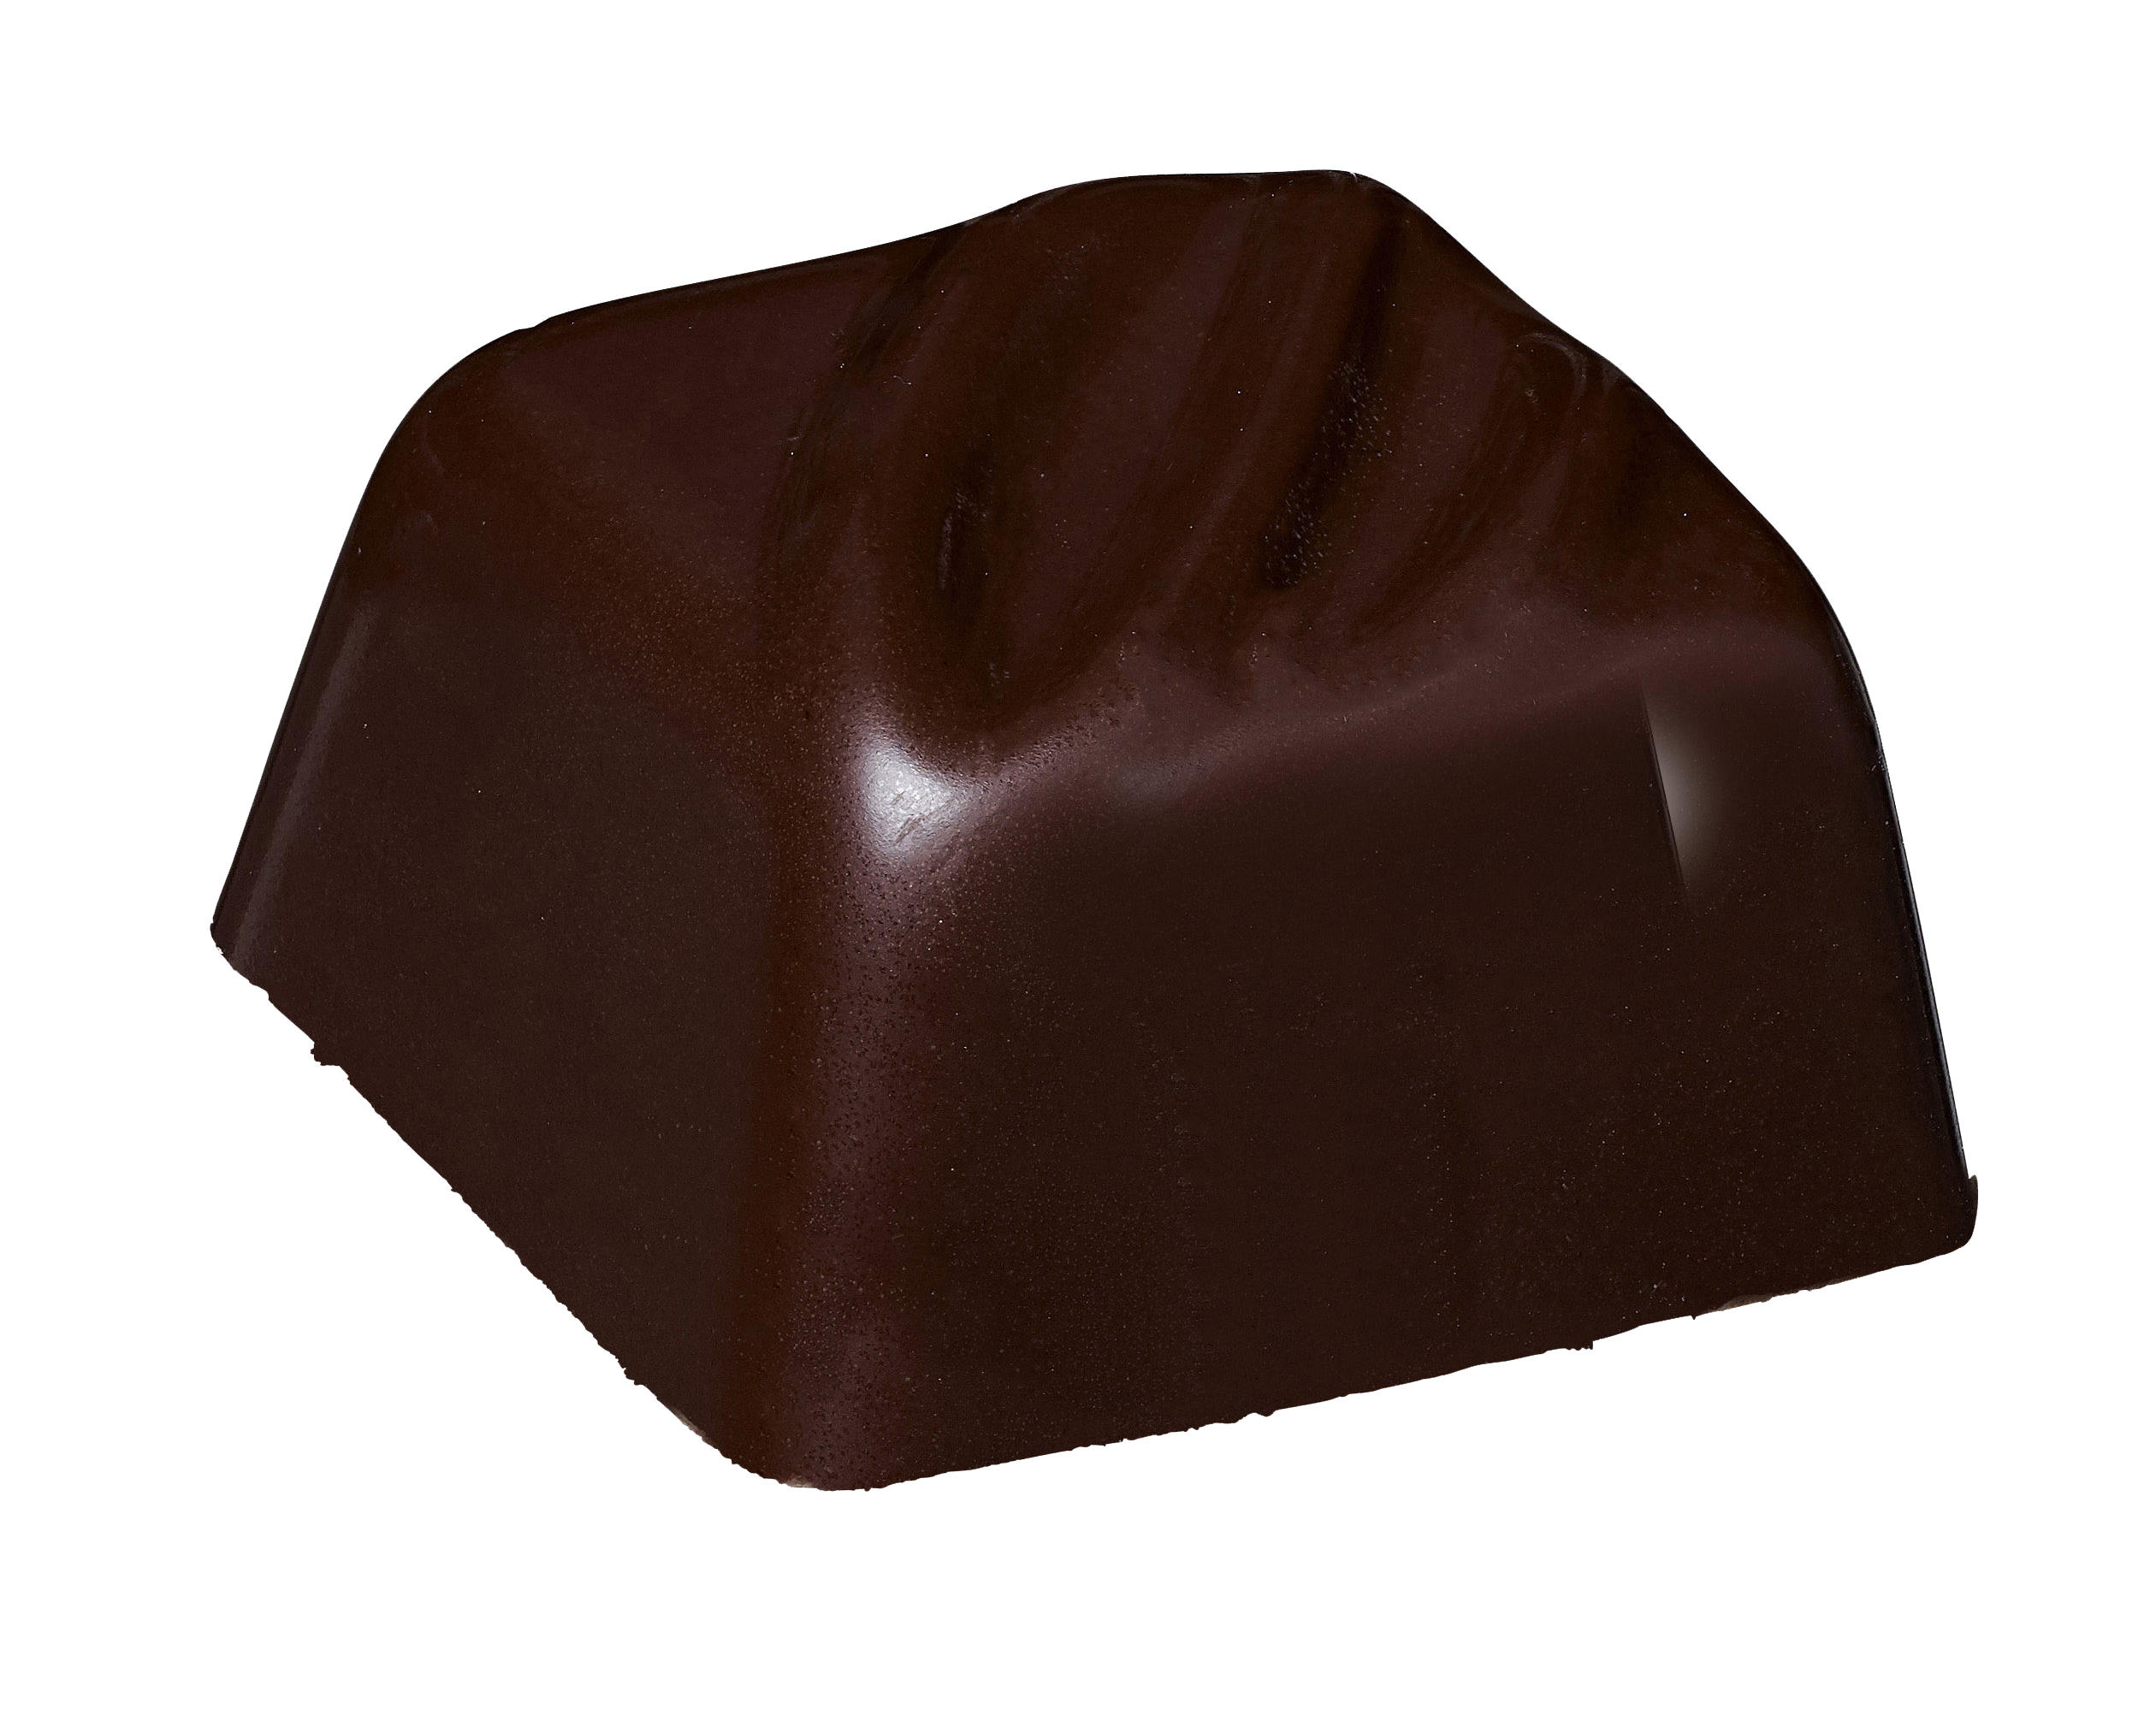 Belledonne Koffie amandel praliné (omhuld met pure chocolade 74%) bio 1kg - 002677